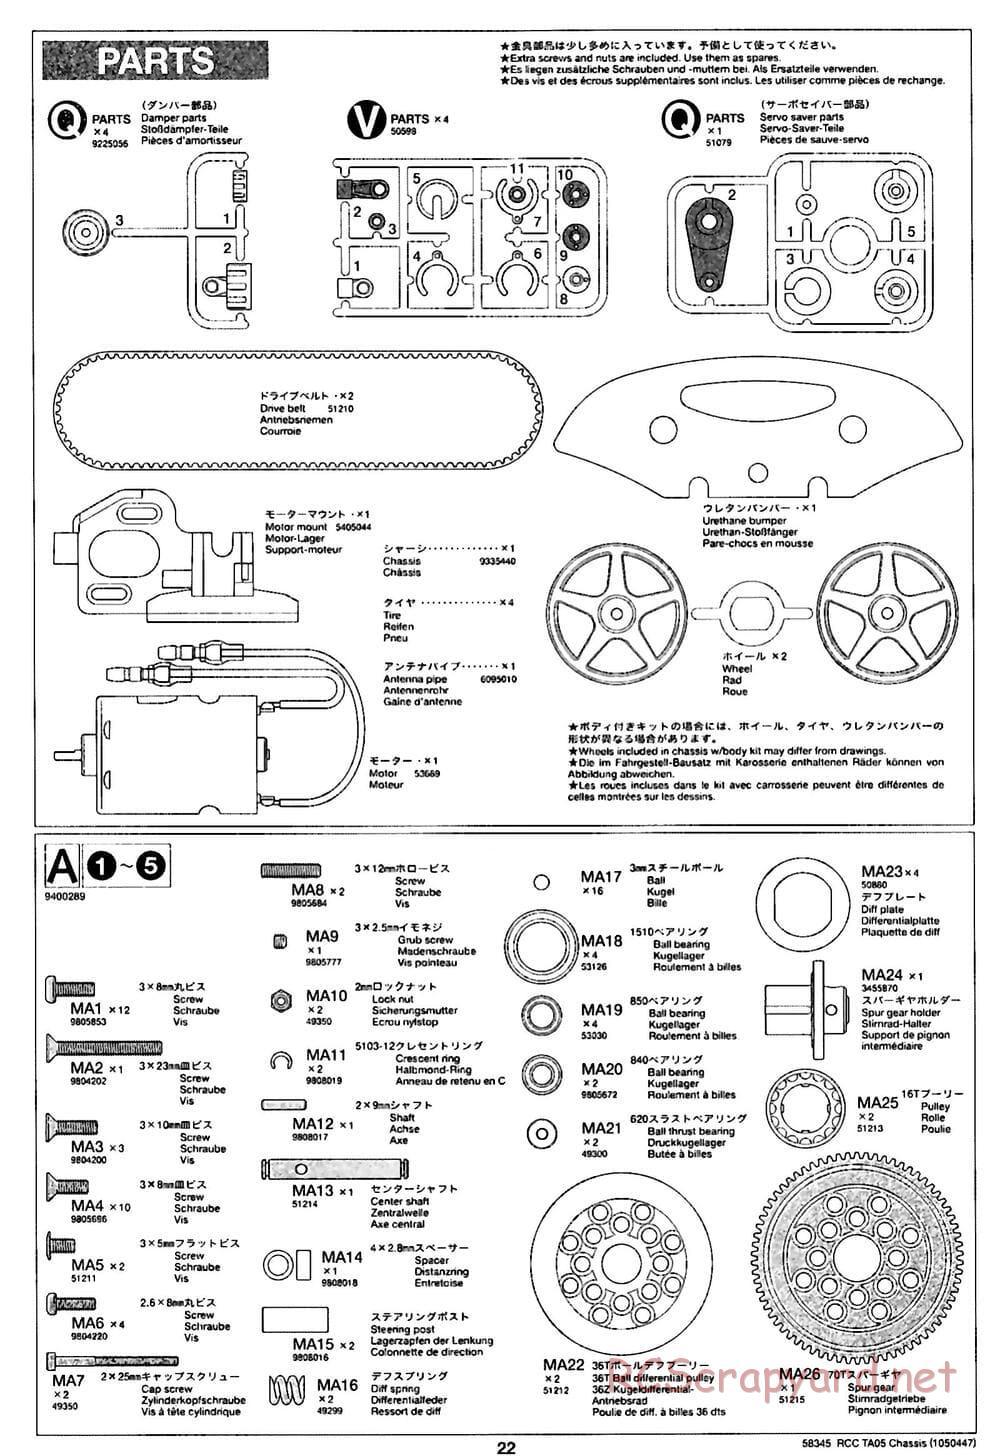 Tamiya - TA05 Chassis - Manual - Page 22